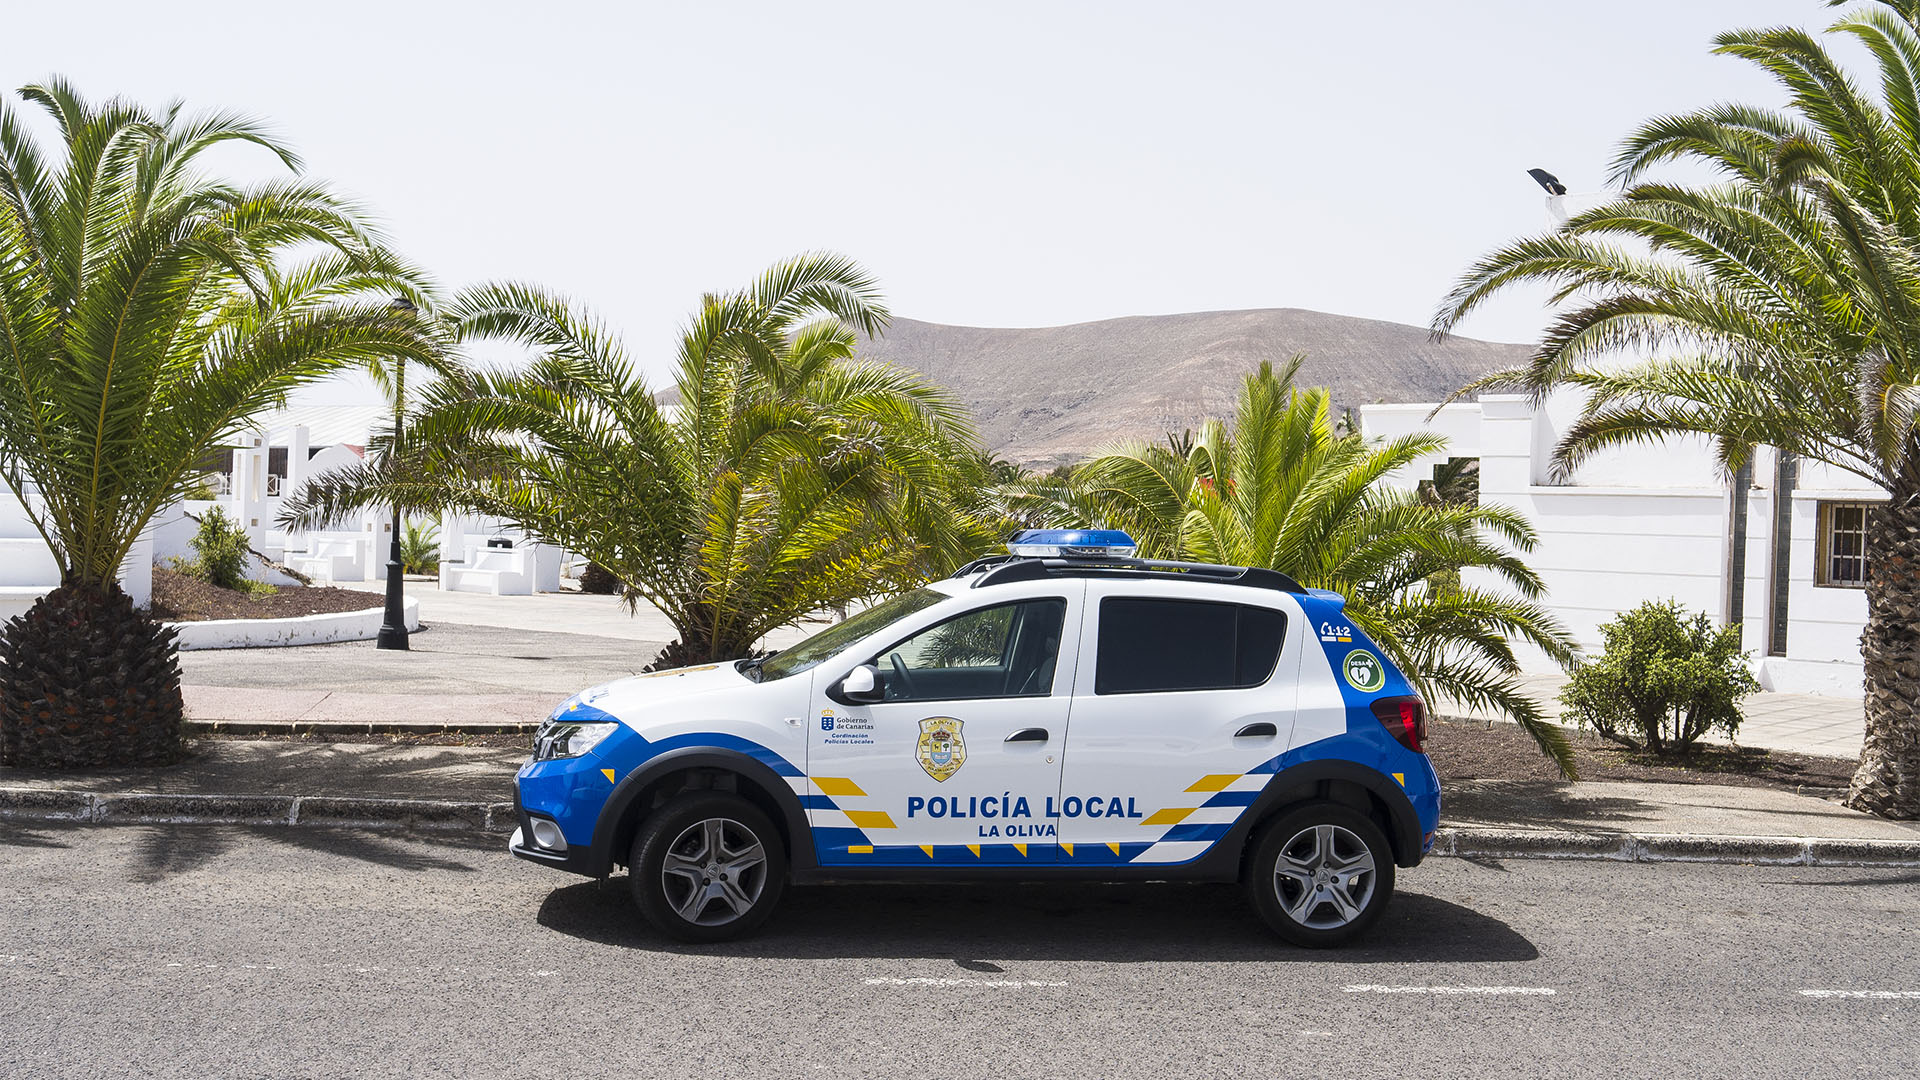 Sicherheit auf Fuerteventura: Policia Local.